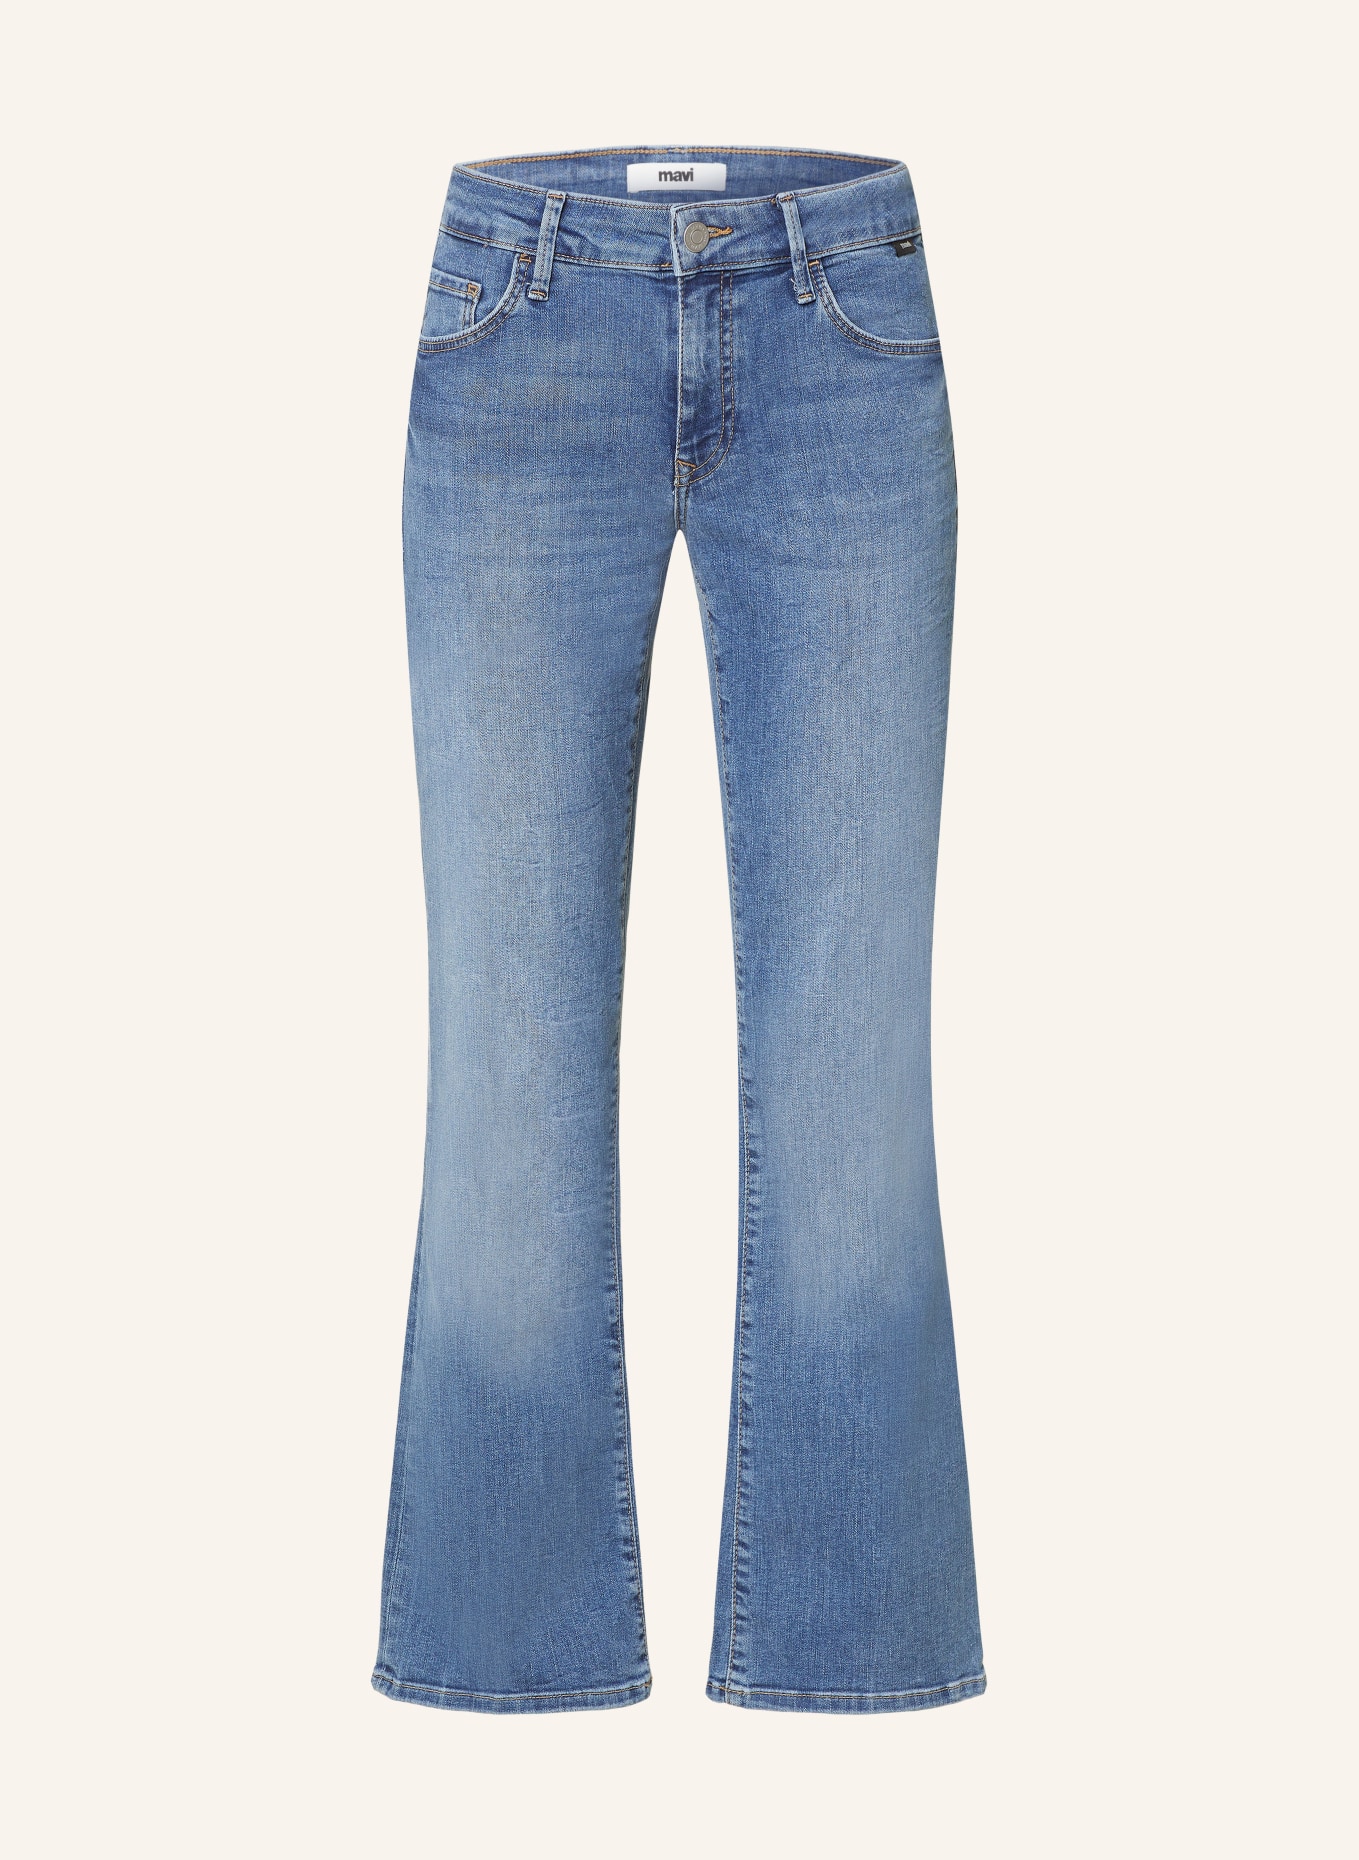 mavi Jeans BELLA, Farbe: 86845 dark brushed str (Bild 1)